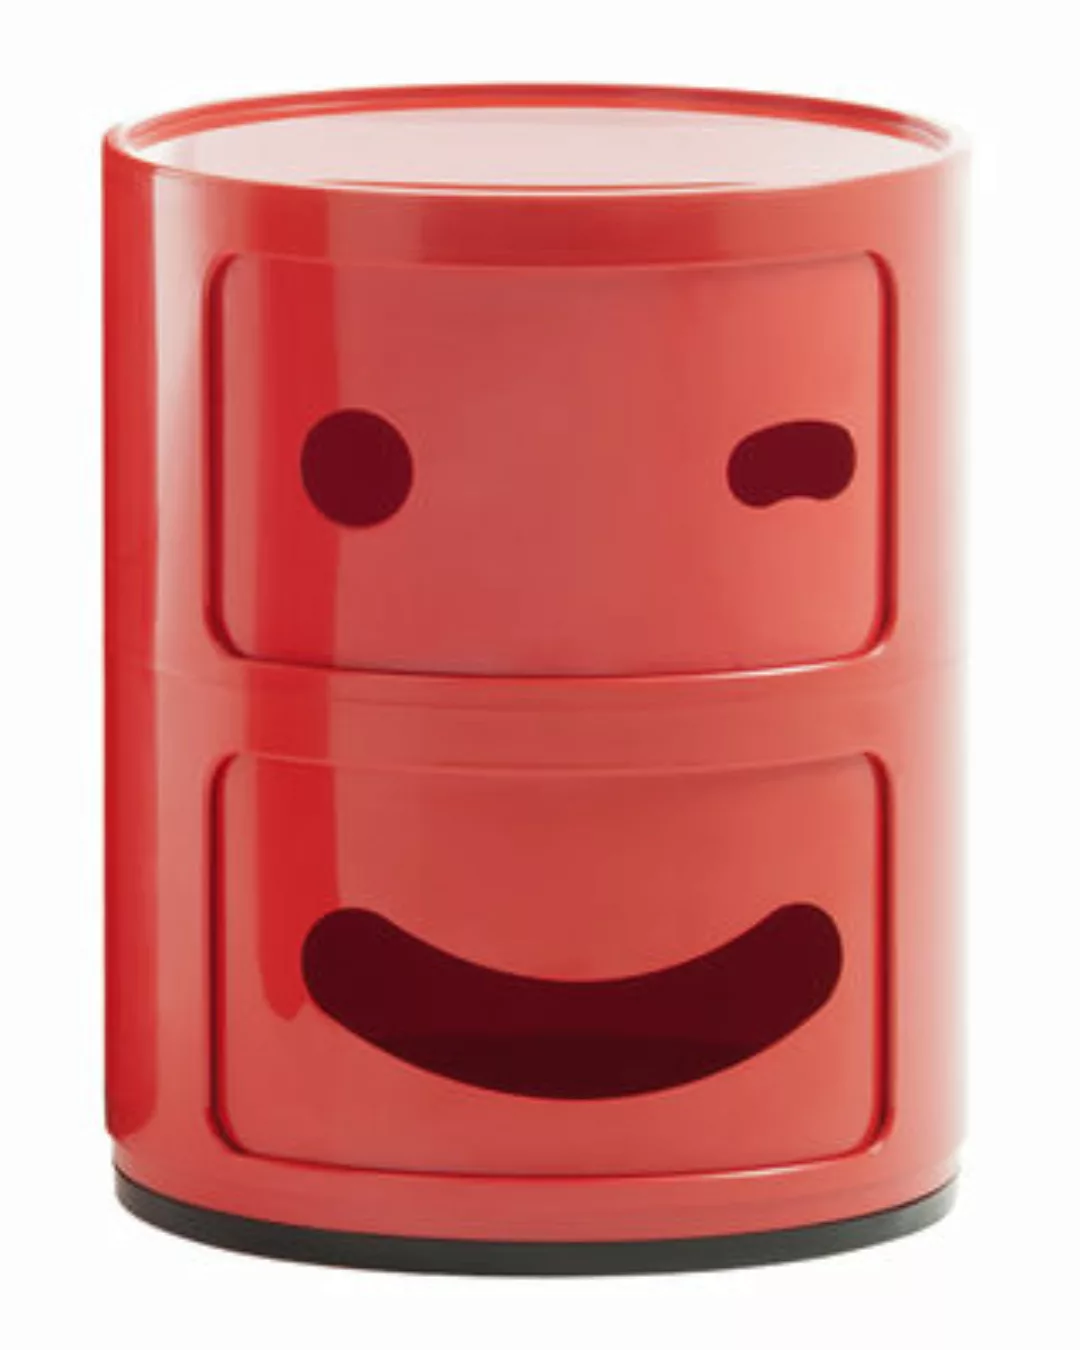 Ablage Componibili Smile N°3 plastikmaterial rot / 2 Schubladen - H 40 cm - günstig online kaufen